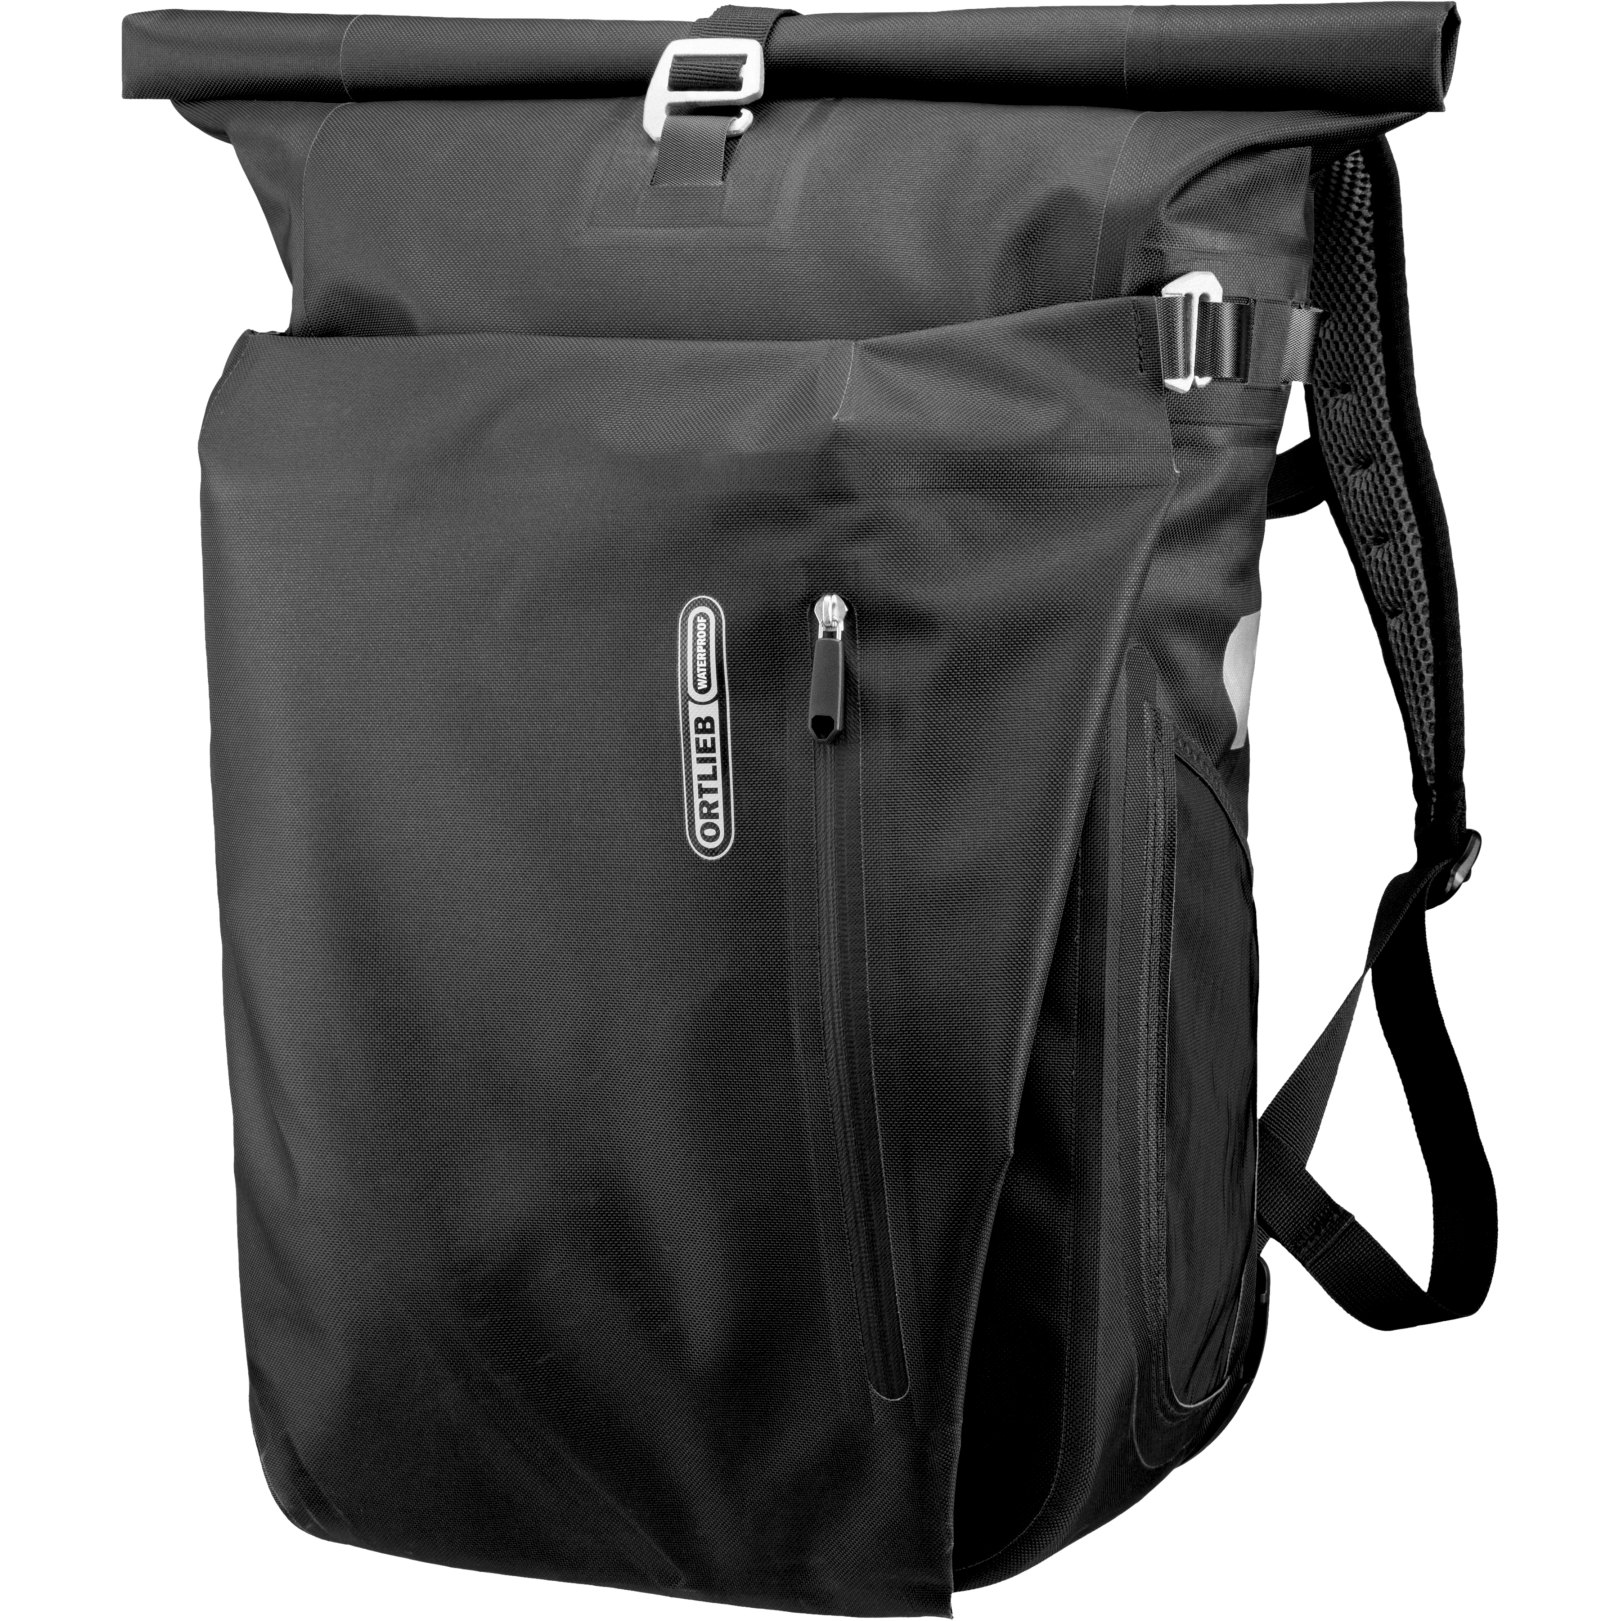 Productfoto van ORTLIEB Vario PS - QL3.1 Bike Pannier / Backpack - 26L - black